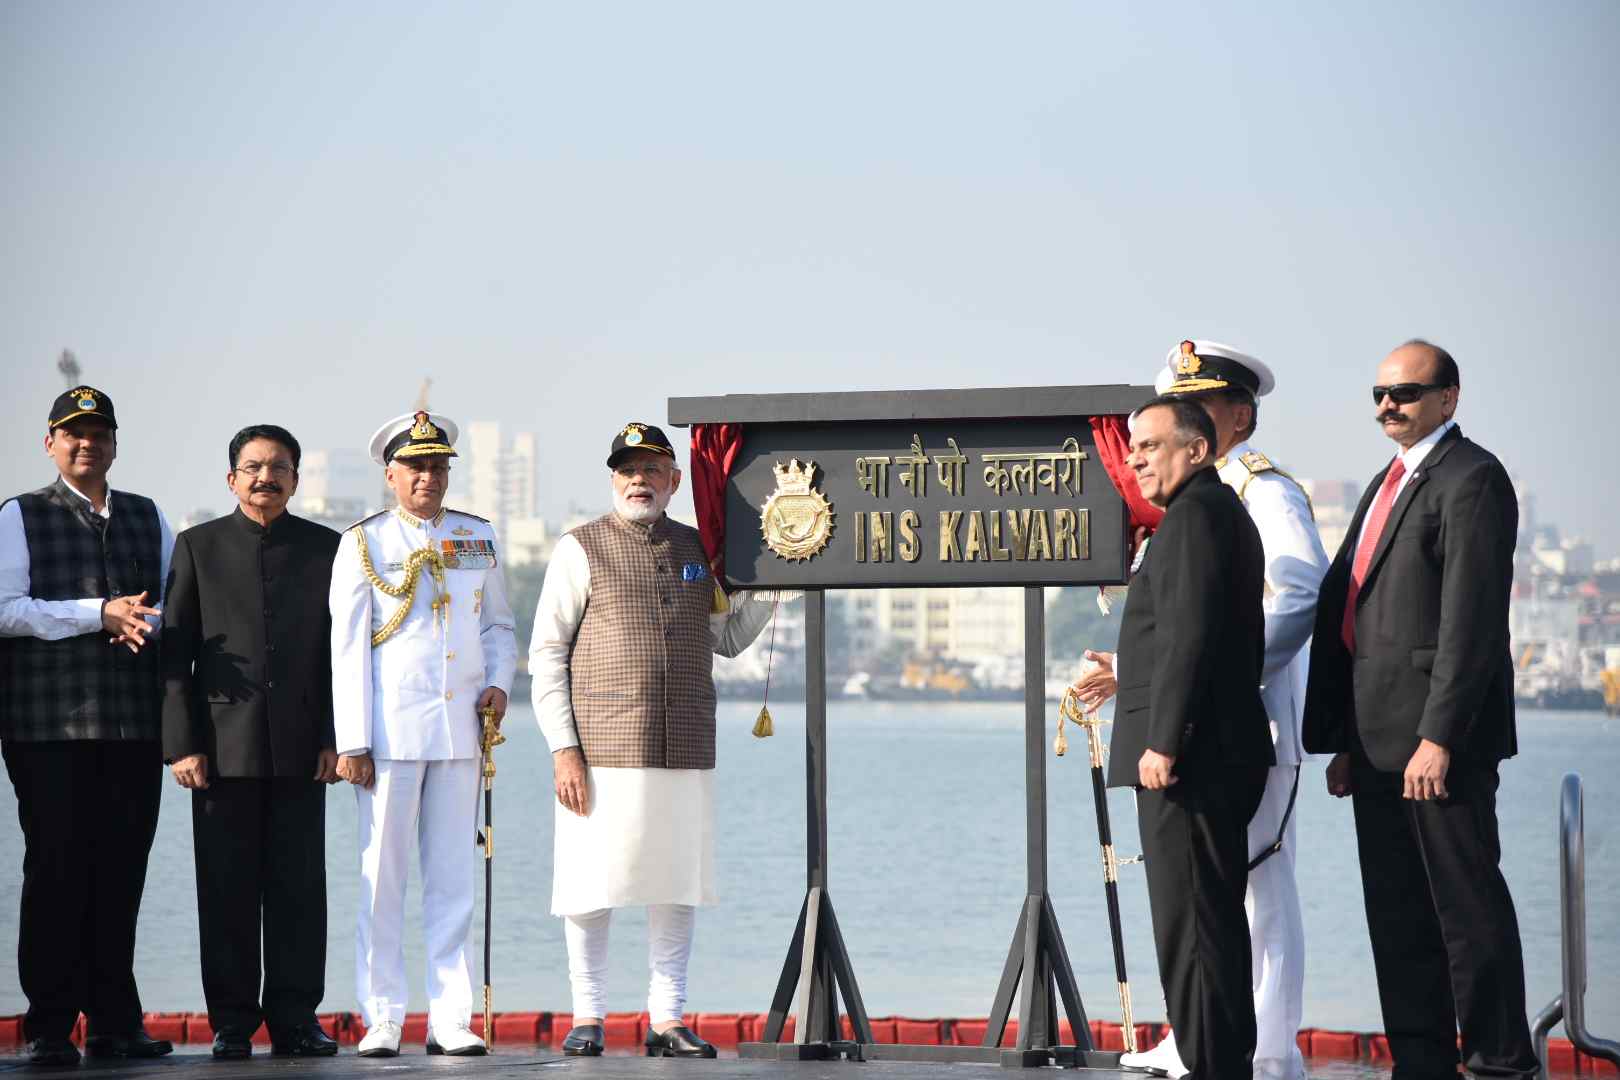 आयएनएस कलवरी हे मेक इन इंडियाचे उत्कृष्ट उदाहरण  आयएनएस कलवरी पाणबुडीमुळे भारतीय नौदल अधिक सक्षम  -       प्रधानमंत्री नरेंद्र मोदी